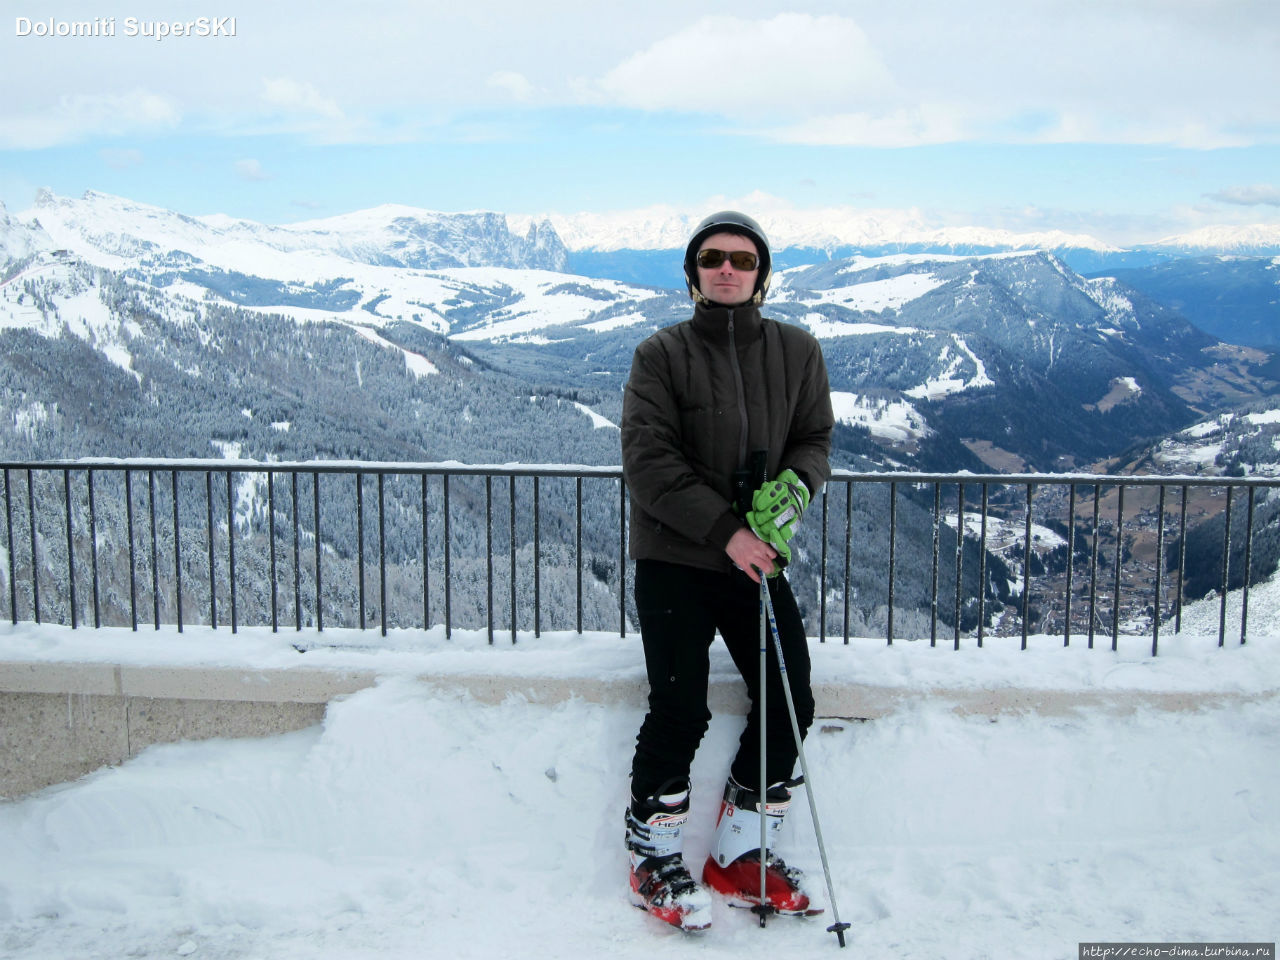 По бразильской системе: как я встал на лыжи в Доломитах! ч.1 Сельва-Гардена, Италия